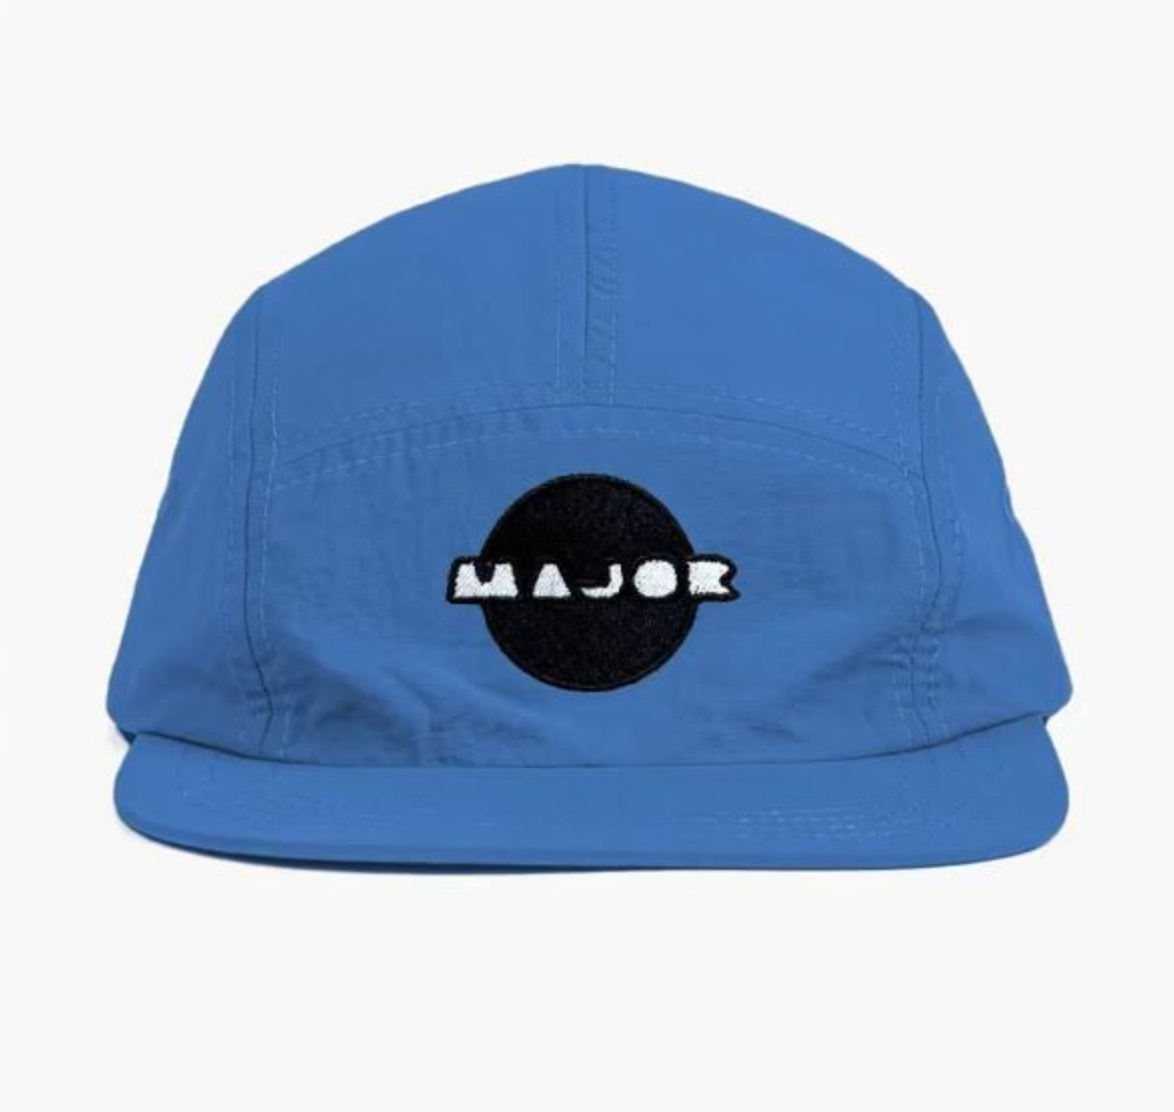 Blue Camper Hat – We Major la